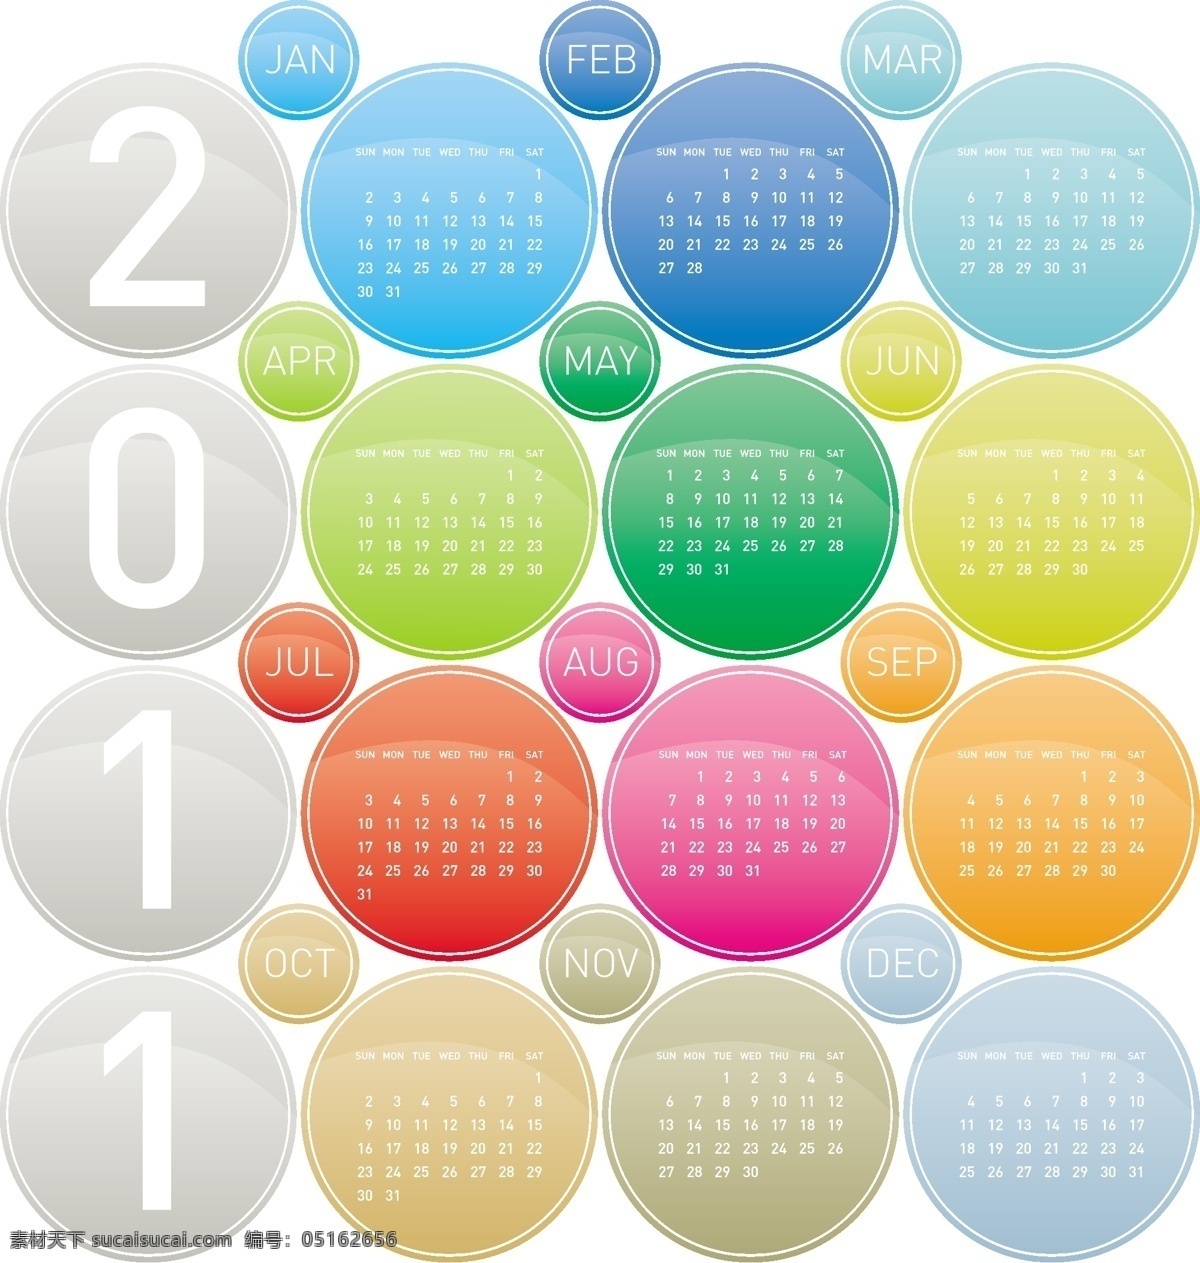 2011 台历 模版 2011年历 2011日历 年 彩色台历下载 矢量图 日常生活